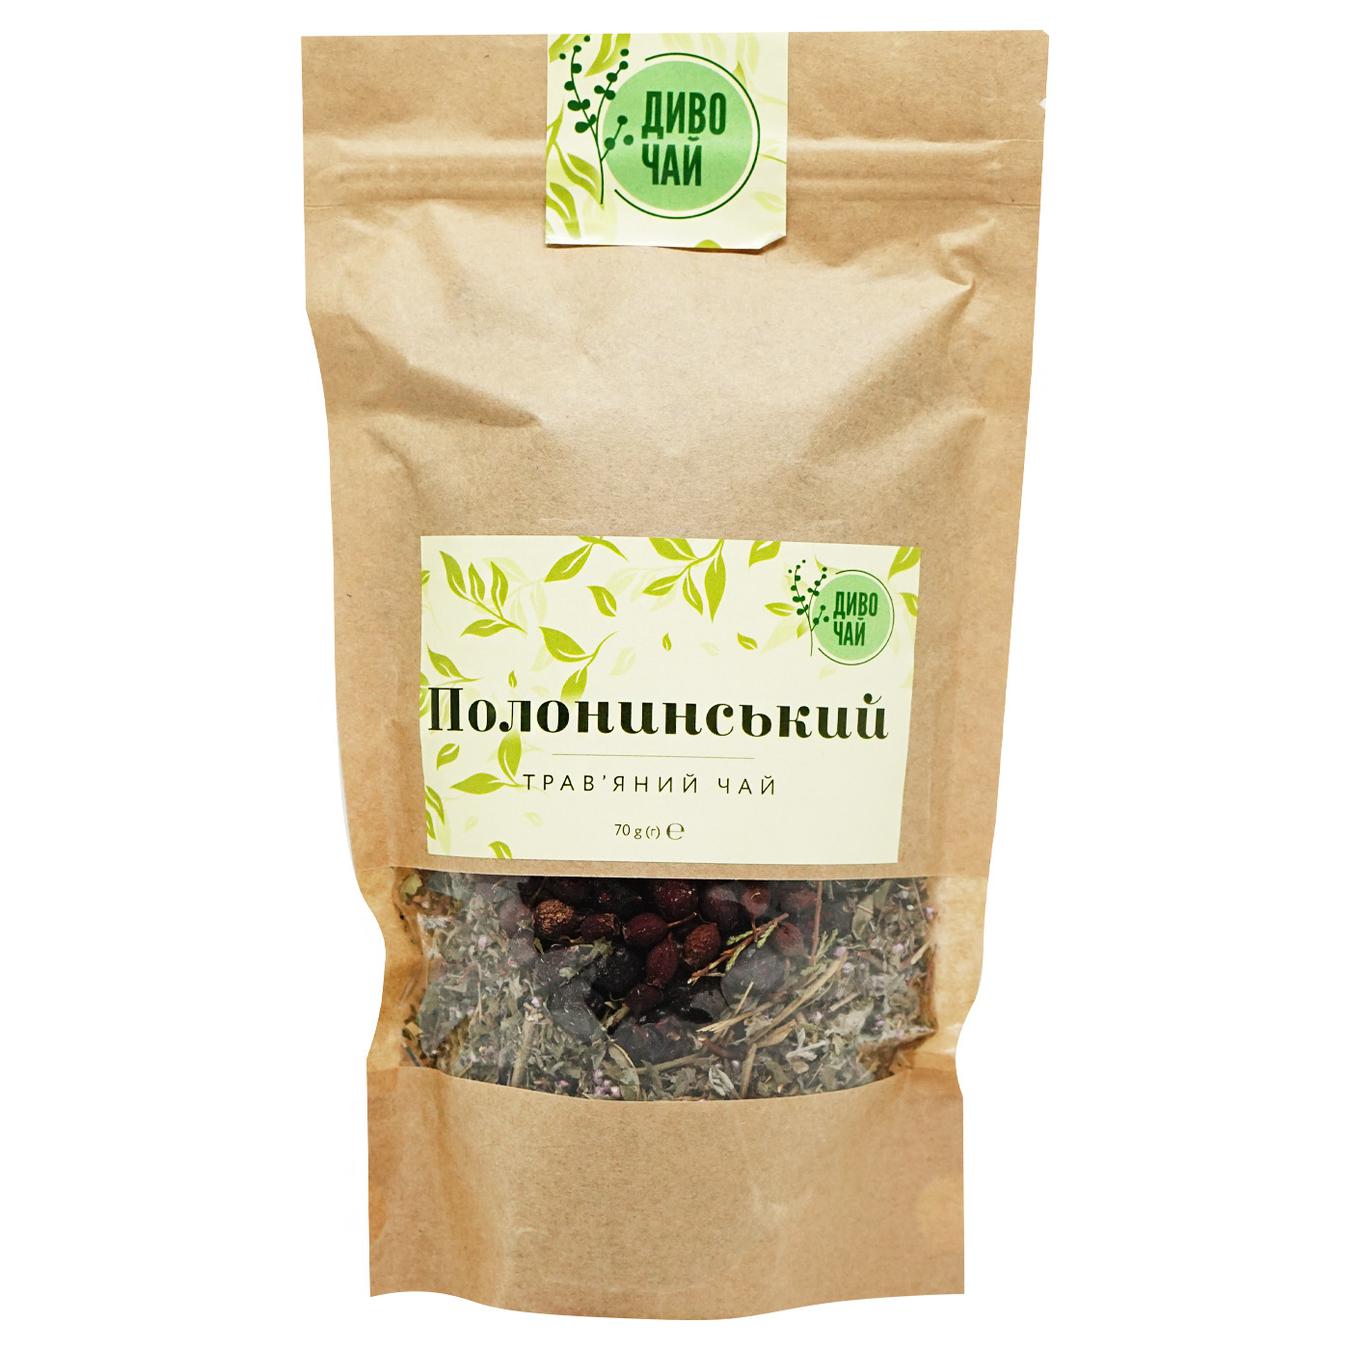 Wild tea Polonynsky herbal tea 70g